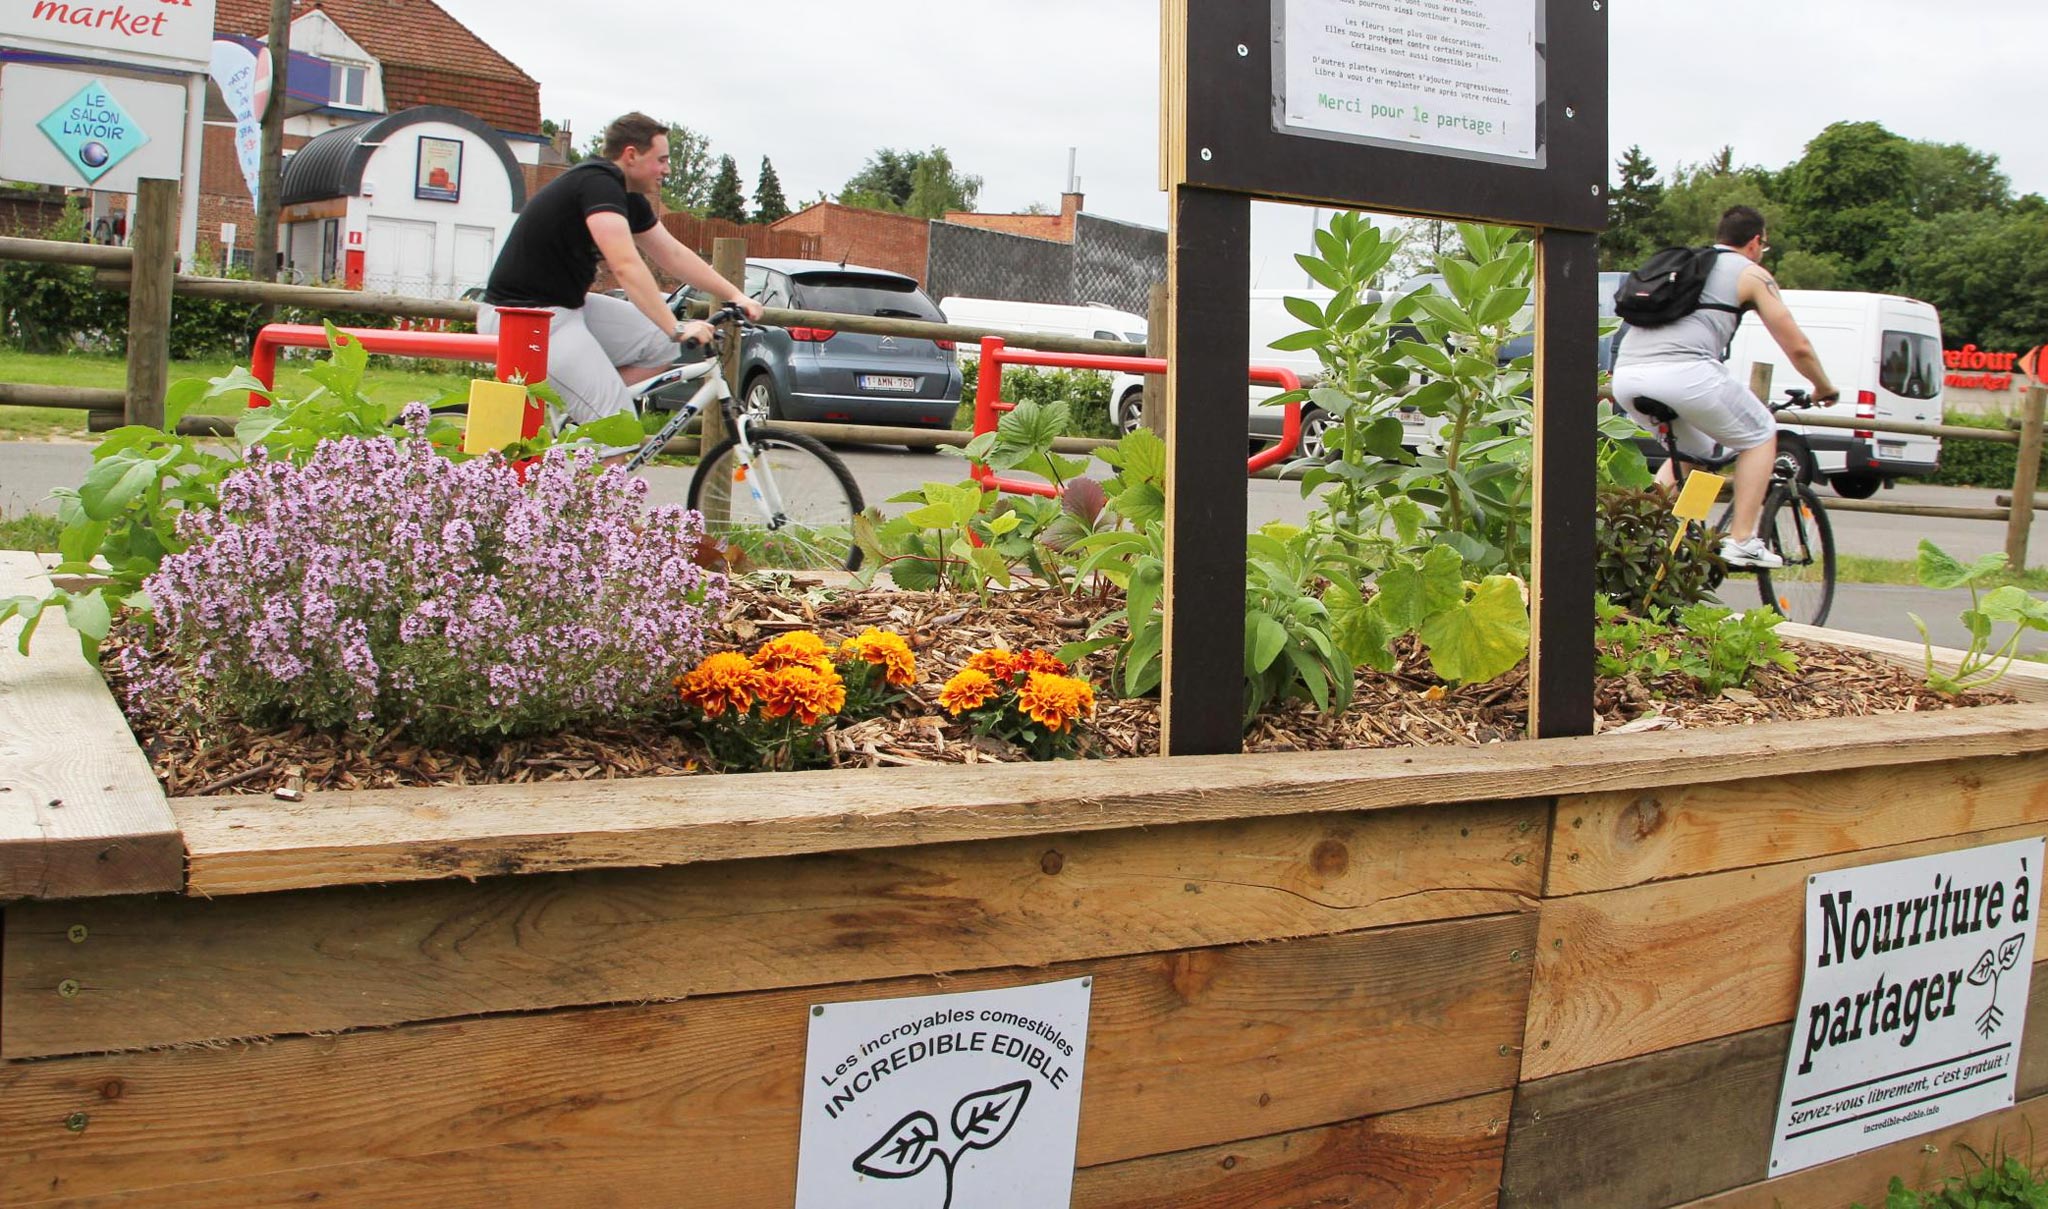 Suivez le Guide : Un petit jardin potager bio et gourmand à Londres